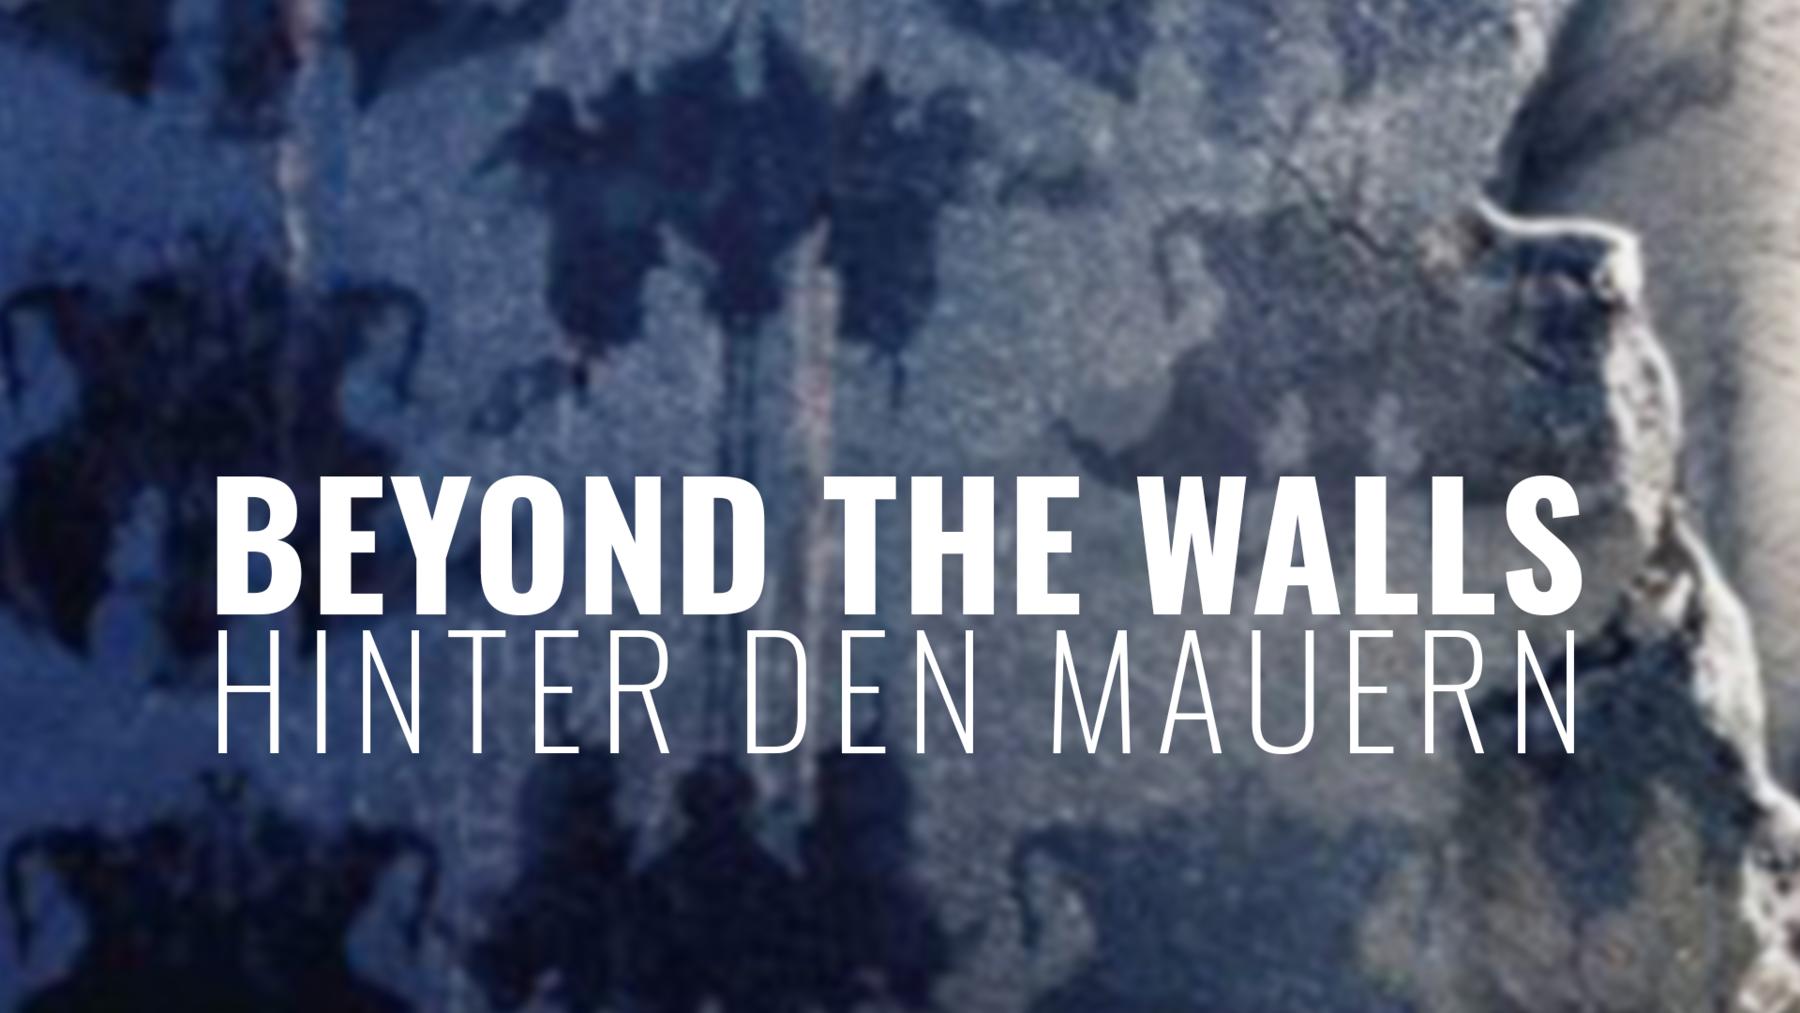 Beyond the Walls - Hinter den Mauern